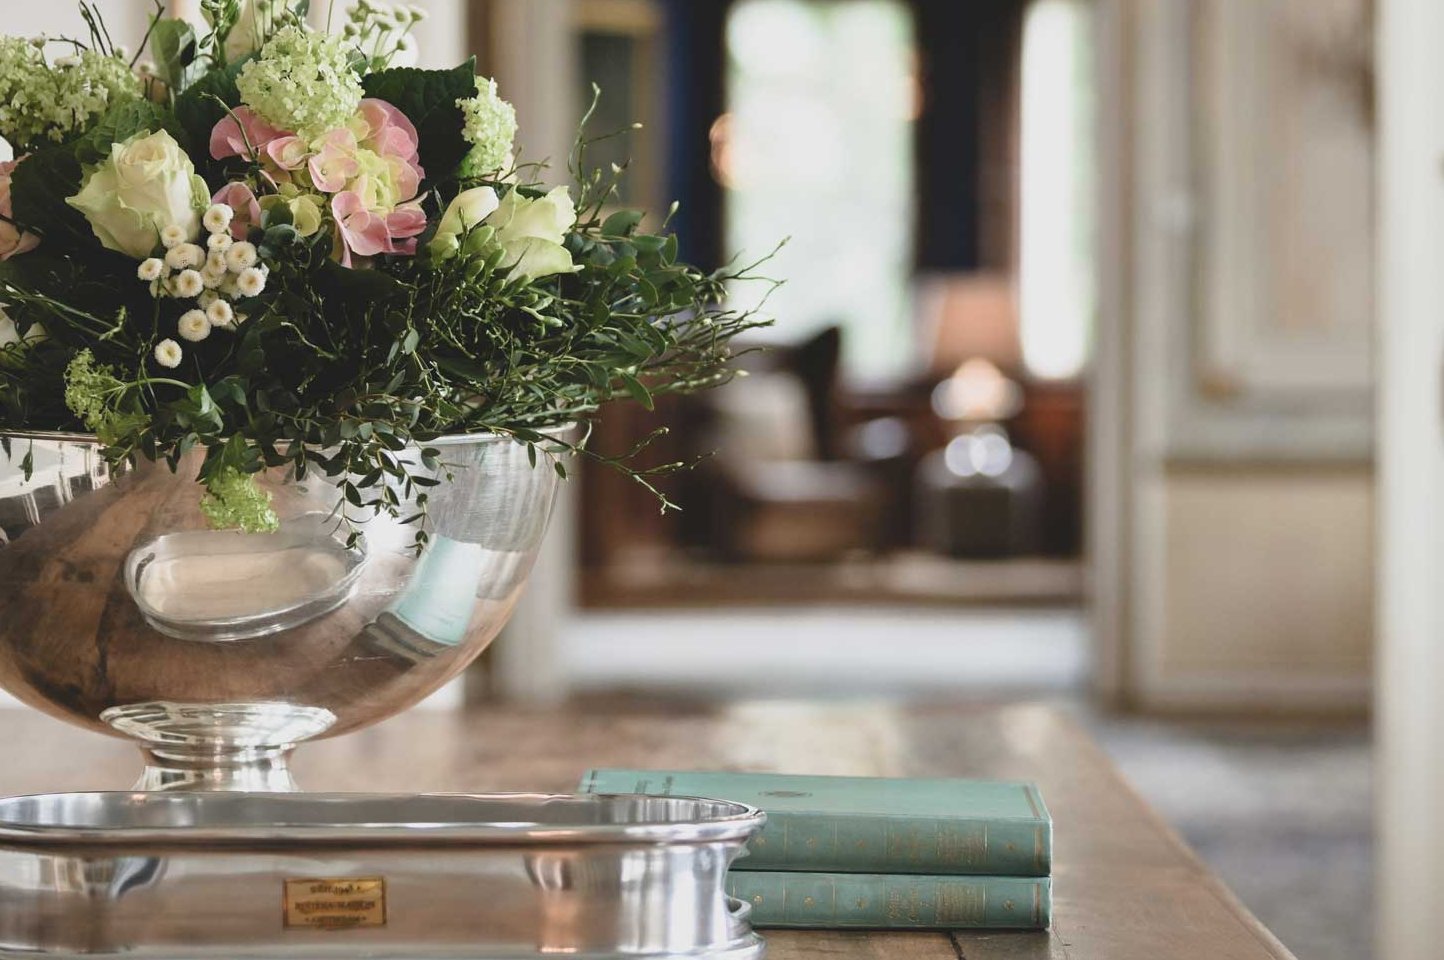 Im Ambiente eines Wohnzimmers stehen frische Blumen in einer Vase neben Büchern zum lesen auf dem Tisch.